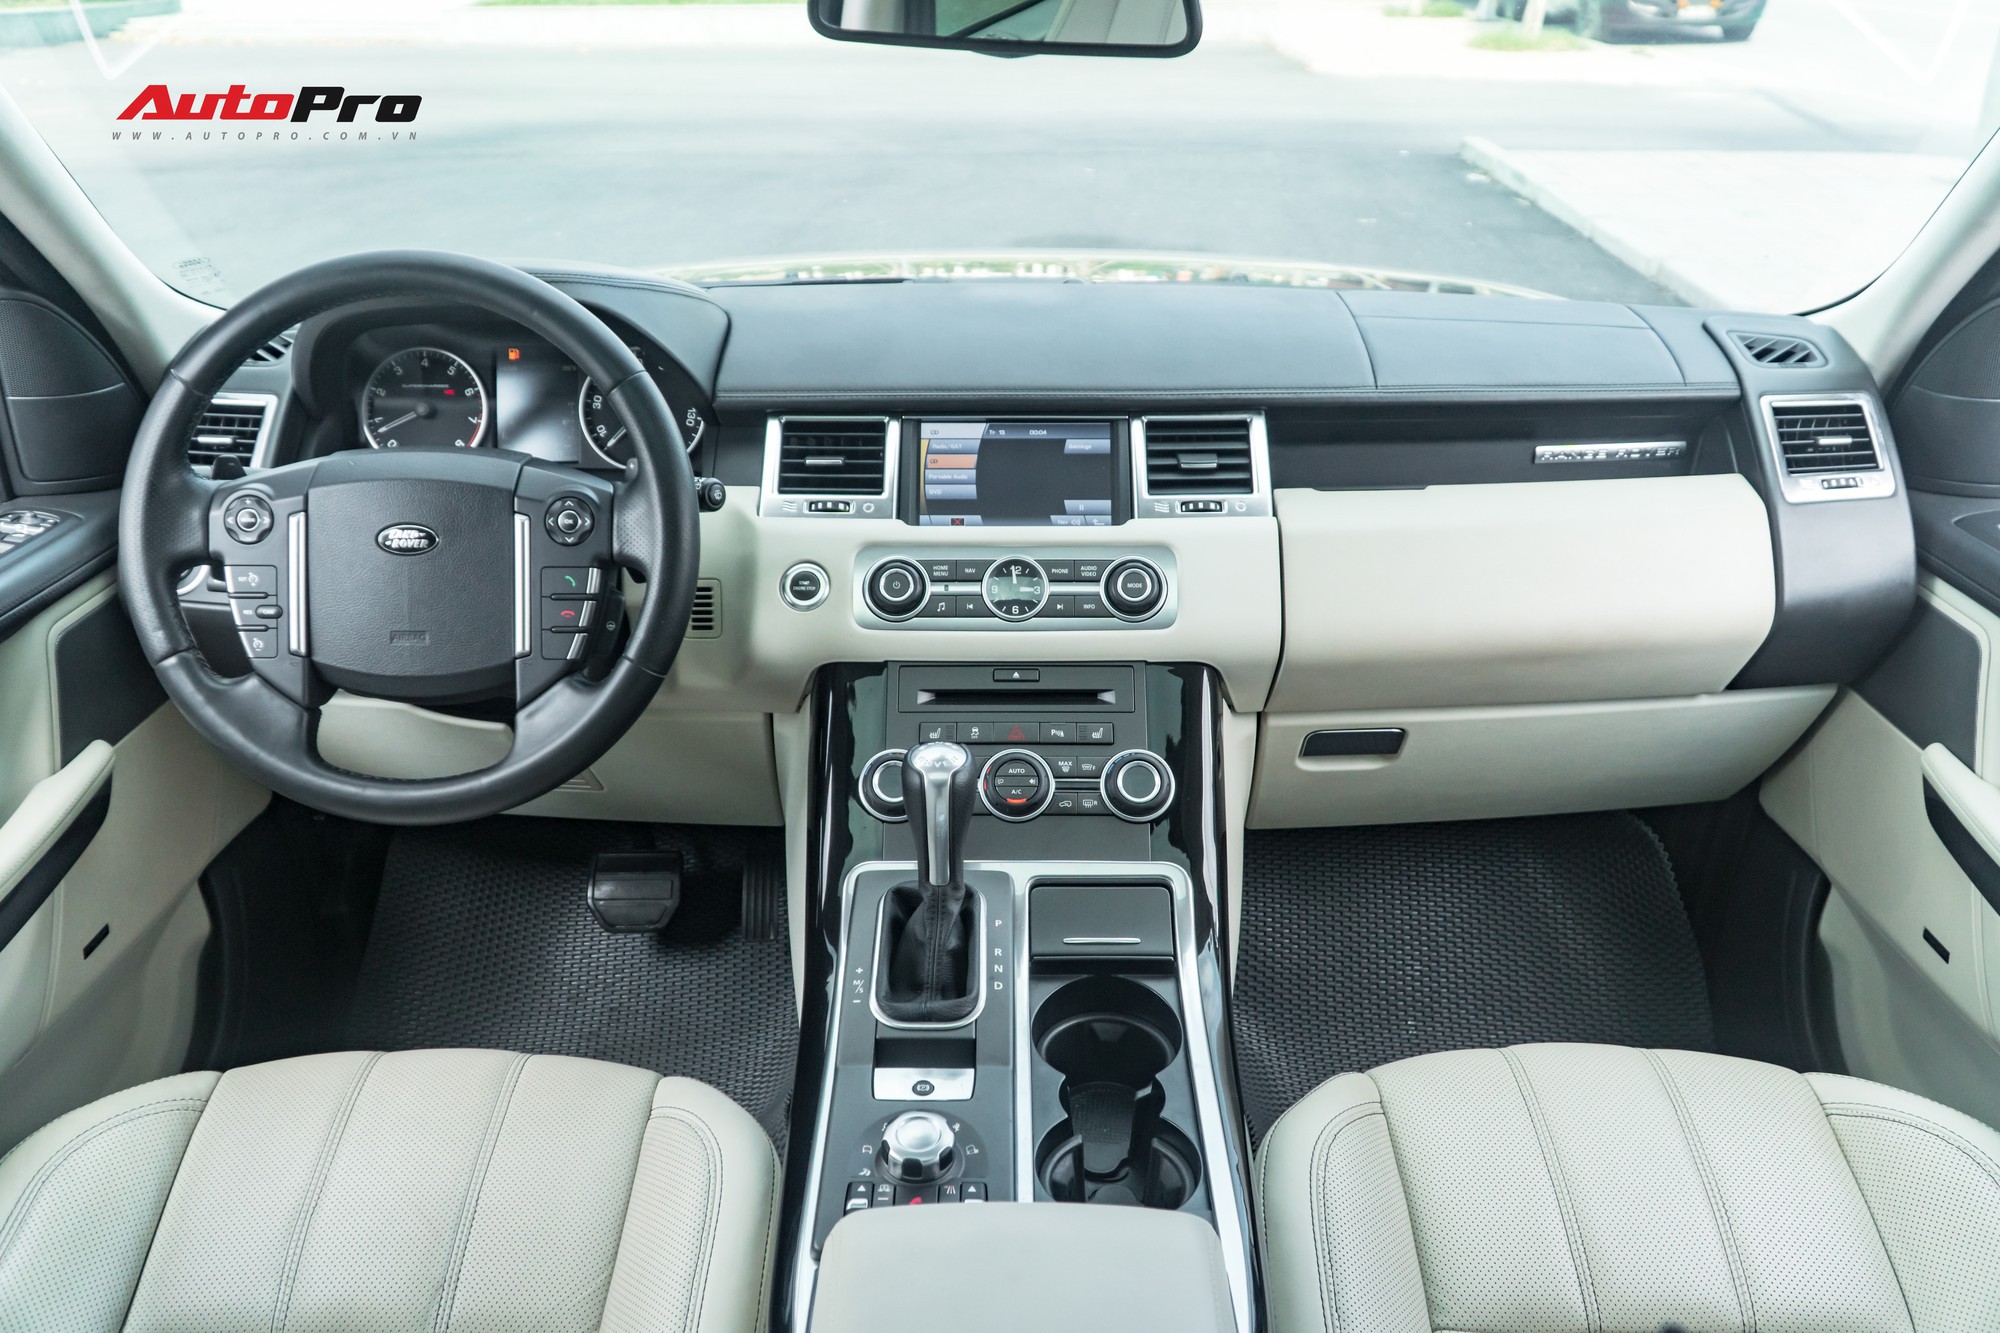 Range Rover Sport 2010 rao bán chỉ hơn 1 tỷ đồng, rẻ như Mazda CX-5